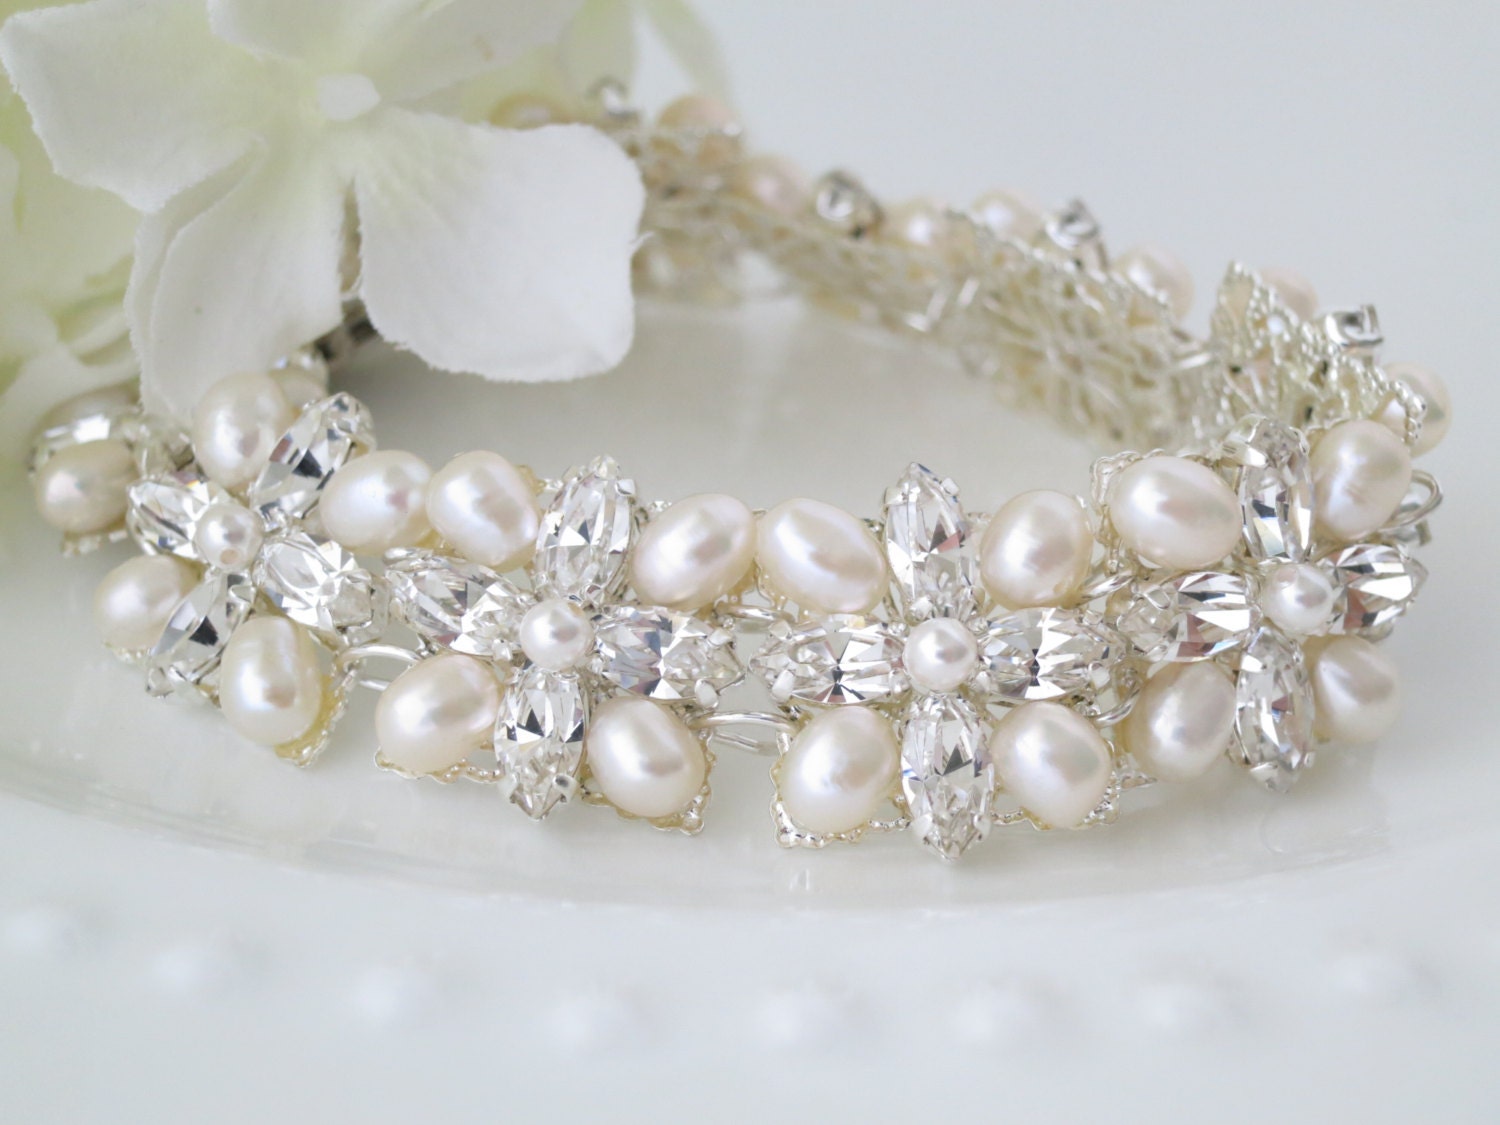 Swarovski rhinestone and freshwater pearl bridal cuff, Vintage style bracelet, Crystal and pearl wedding cuff